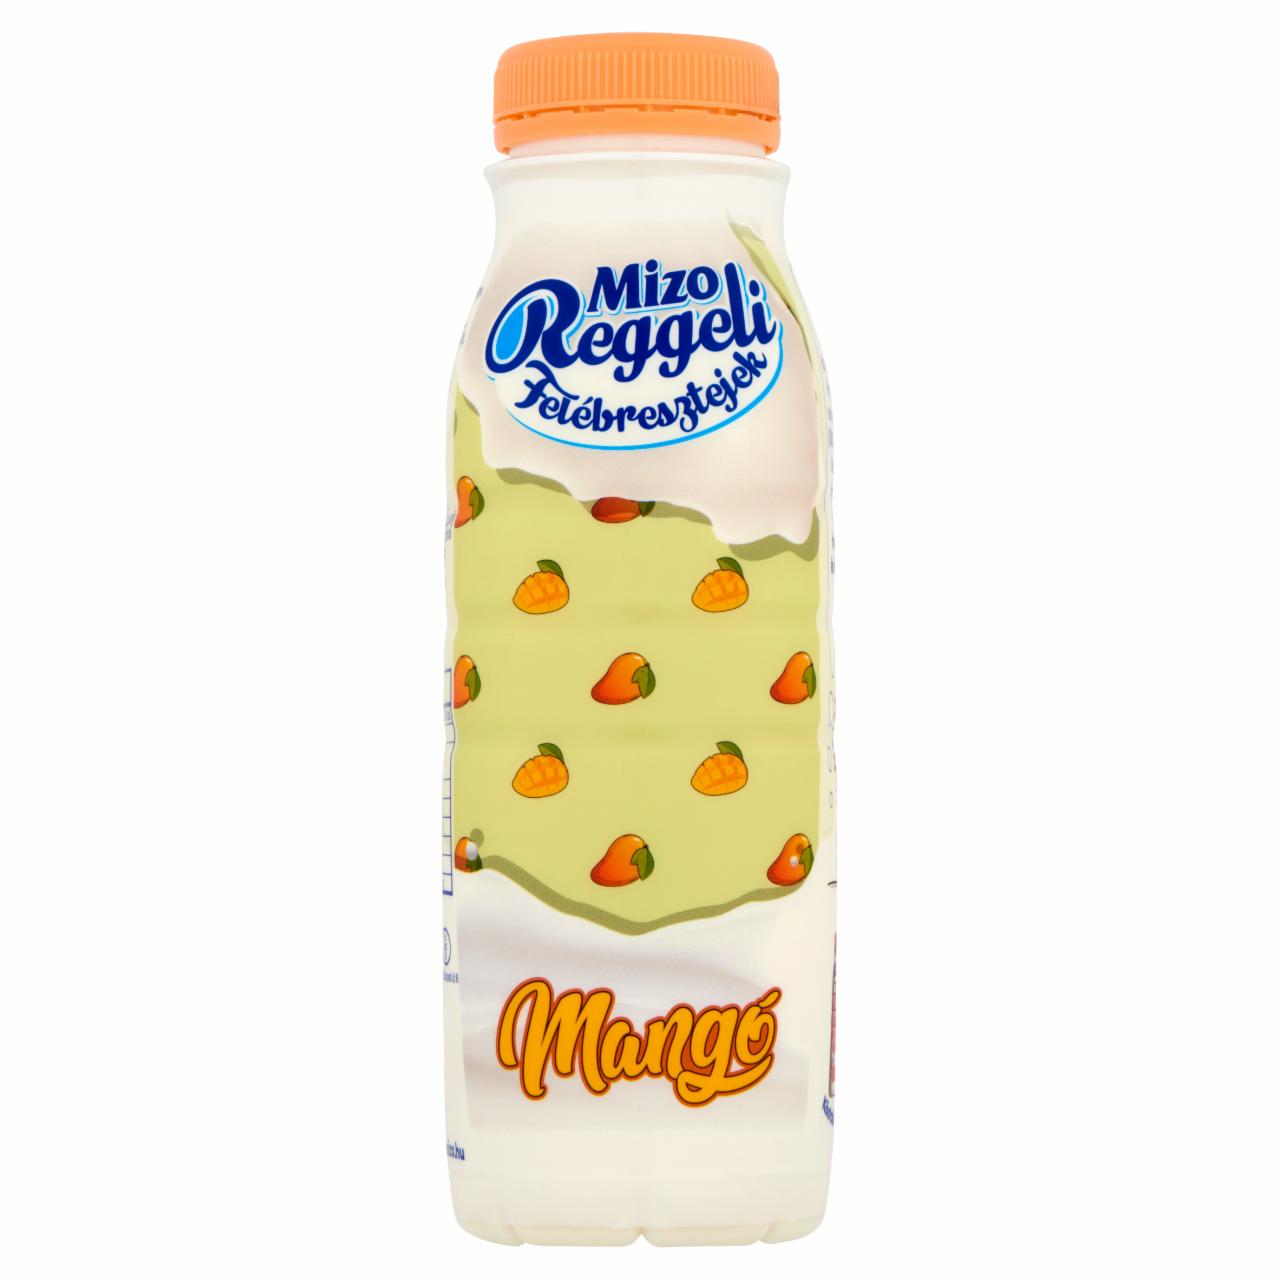 Képek - Mizo Reggeli Felébresztejek - mangó 330 ml